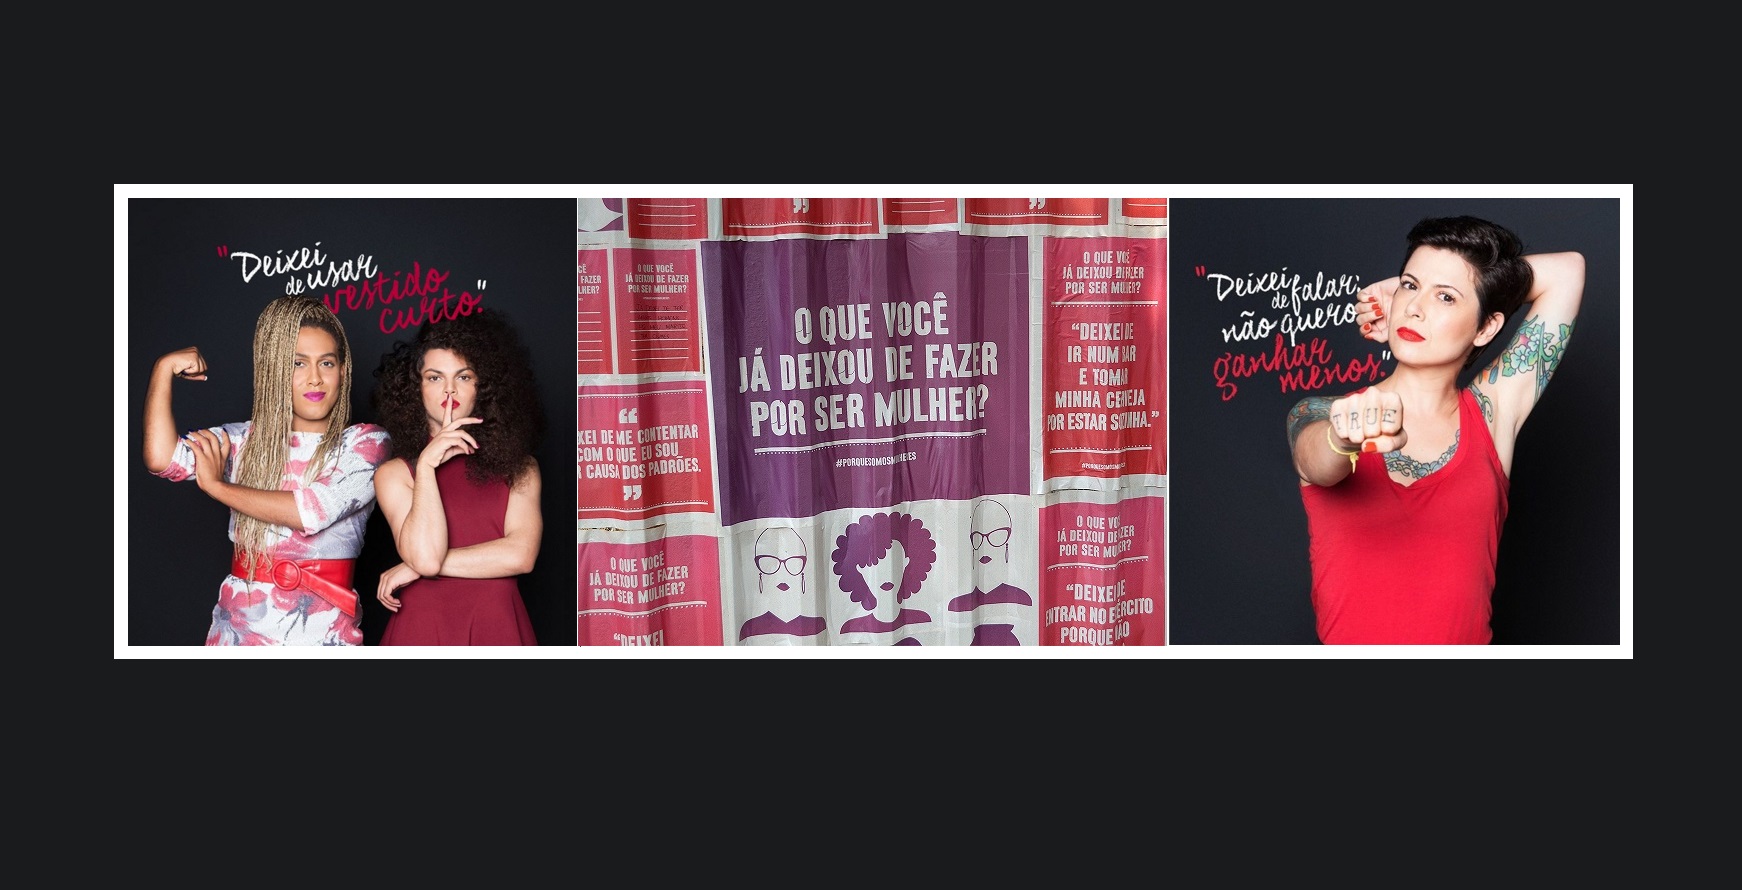 Avon lança a última fase de sua campanha #PorqueSomosMulheres